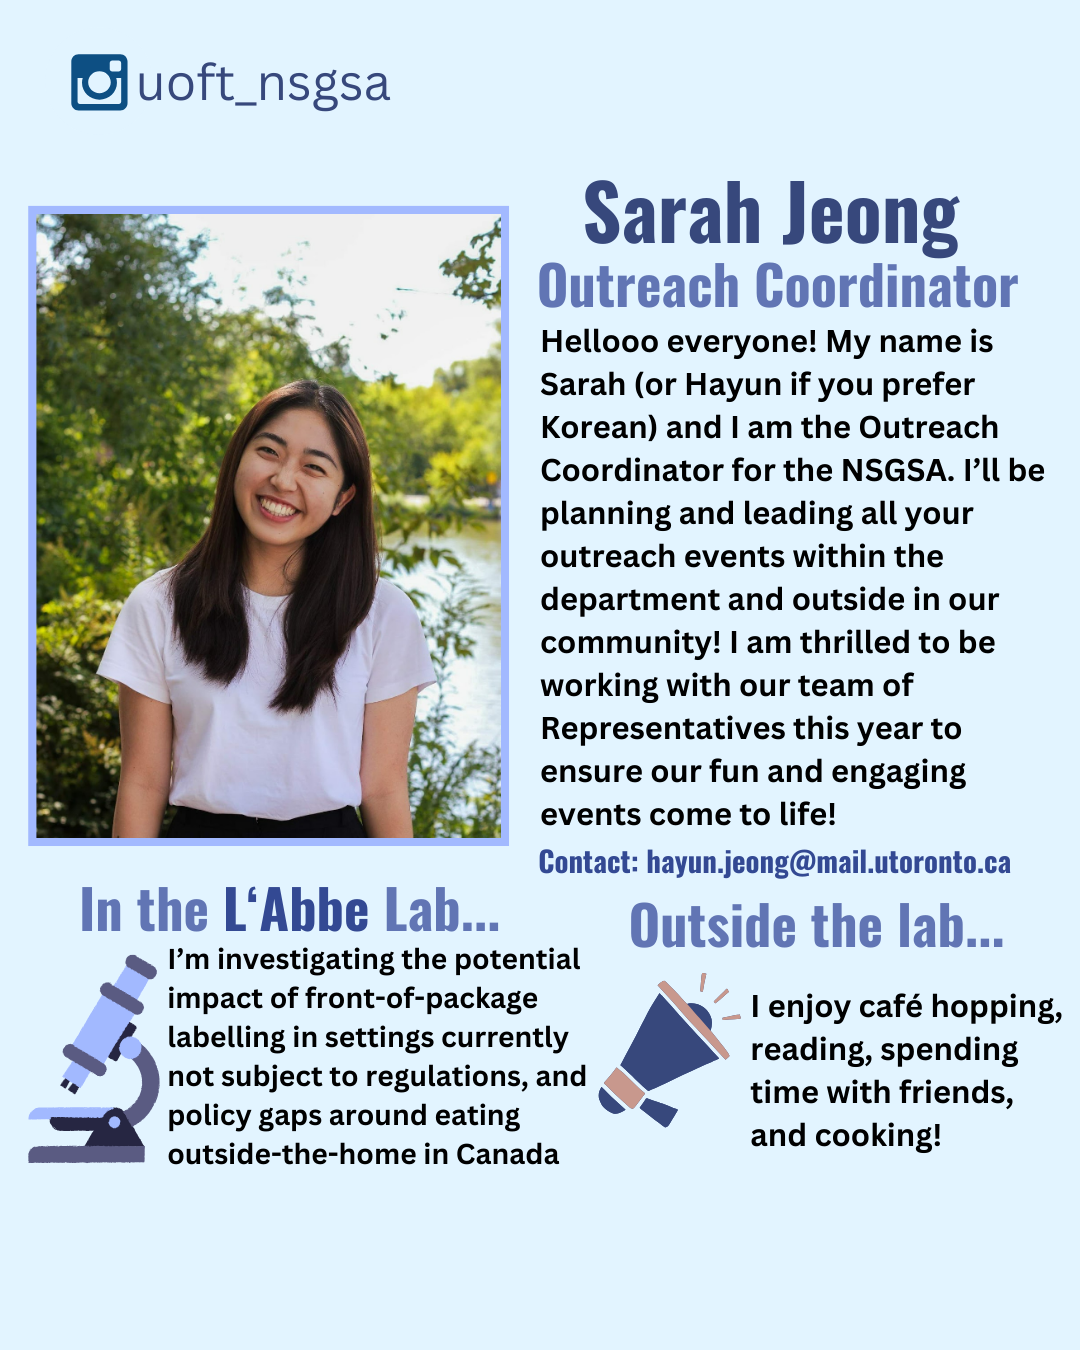 Sarah Jeong, Outreach Coordinator